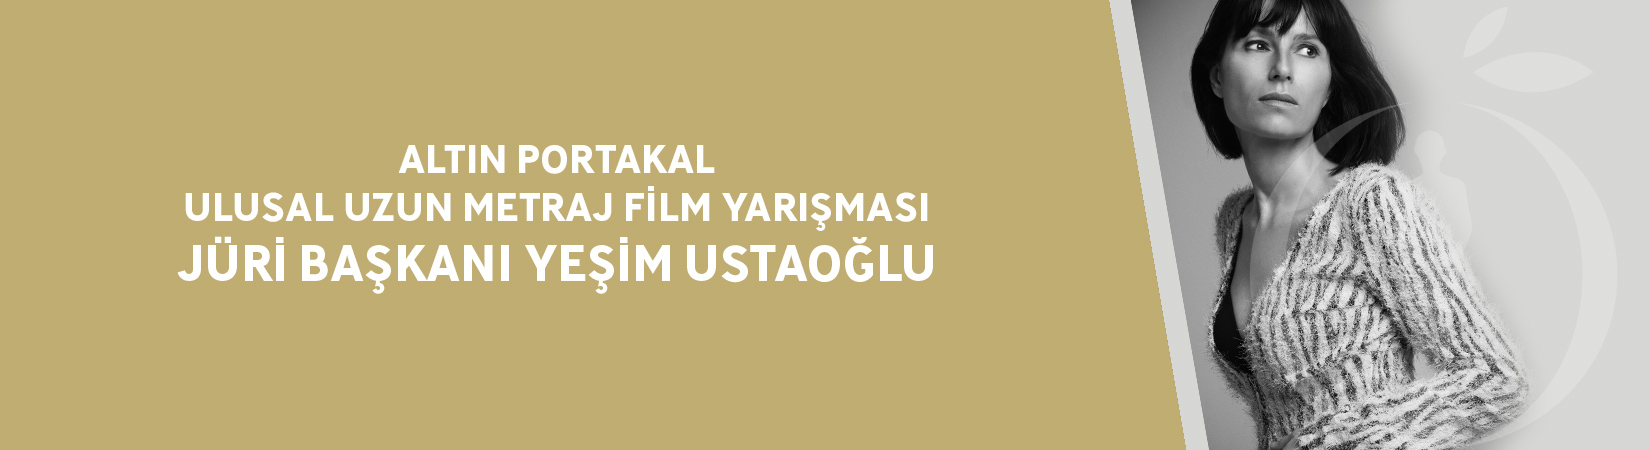 antalya altın portakal film festivali yeşim ustaoğlu